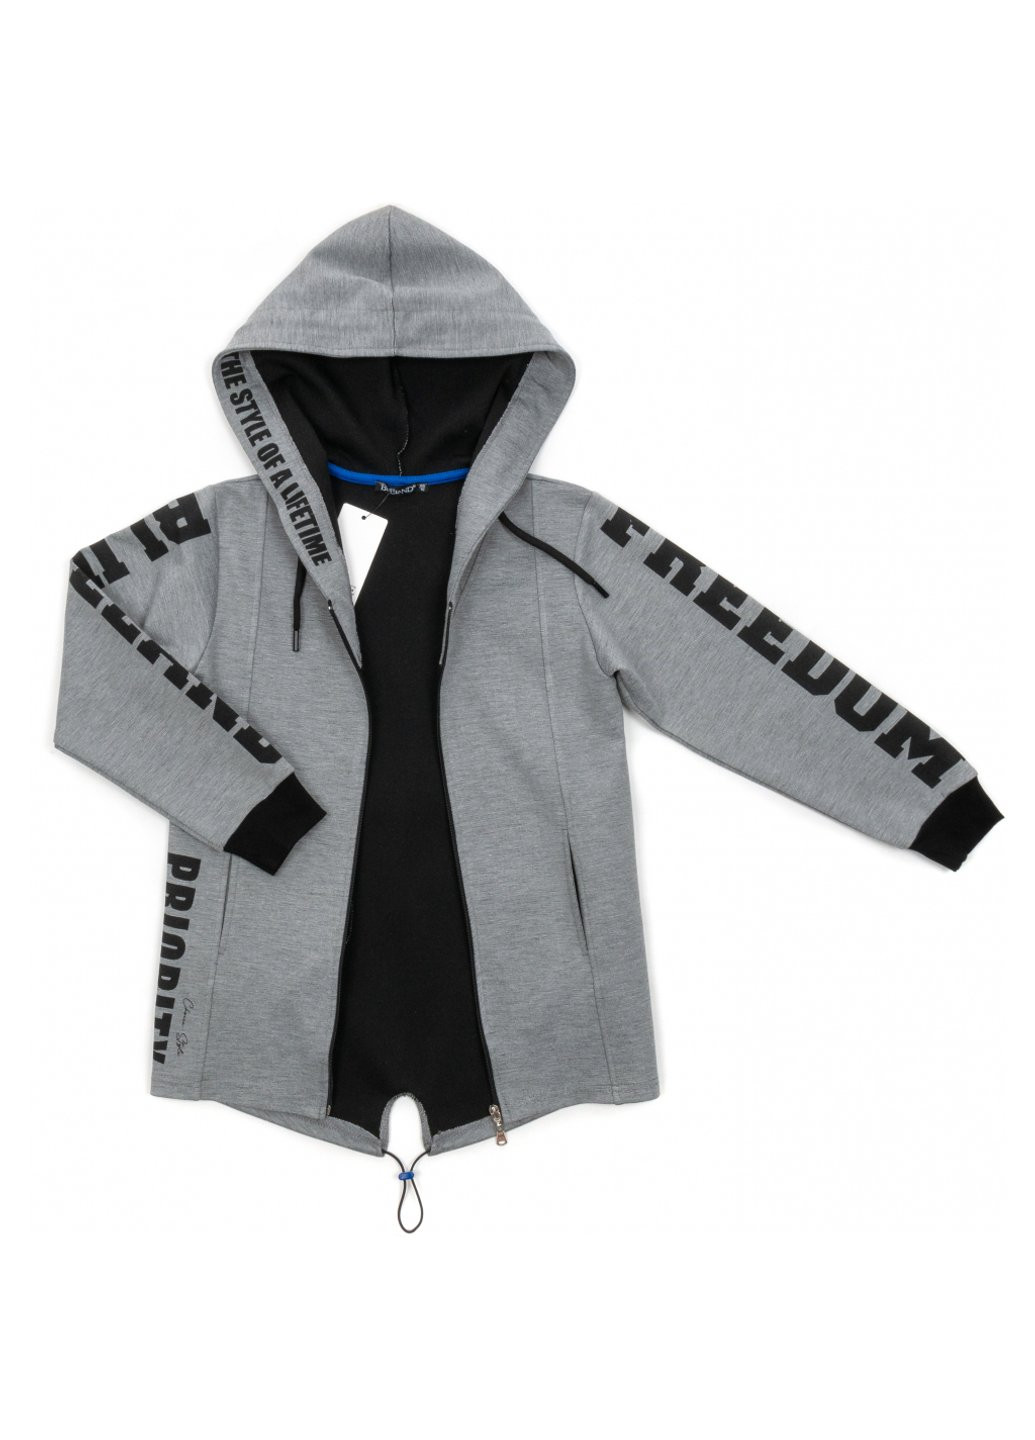 Серая демисезонная куртка ветровка с капюшоном (10760-140b-gray) BLUELAND